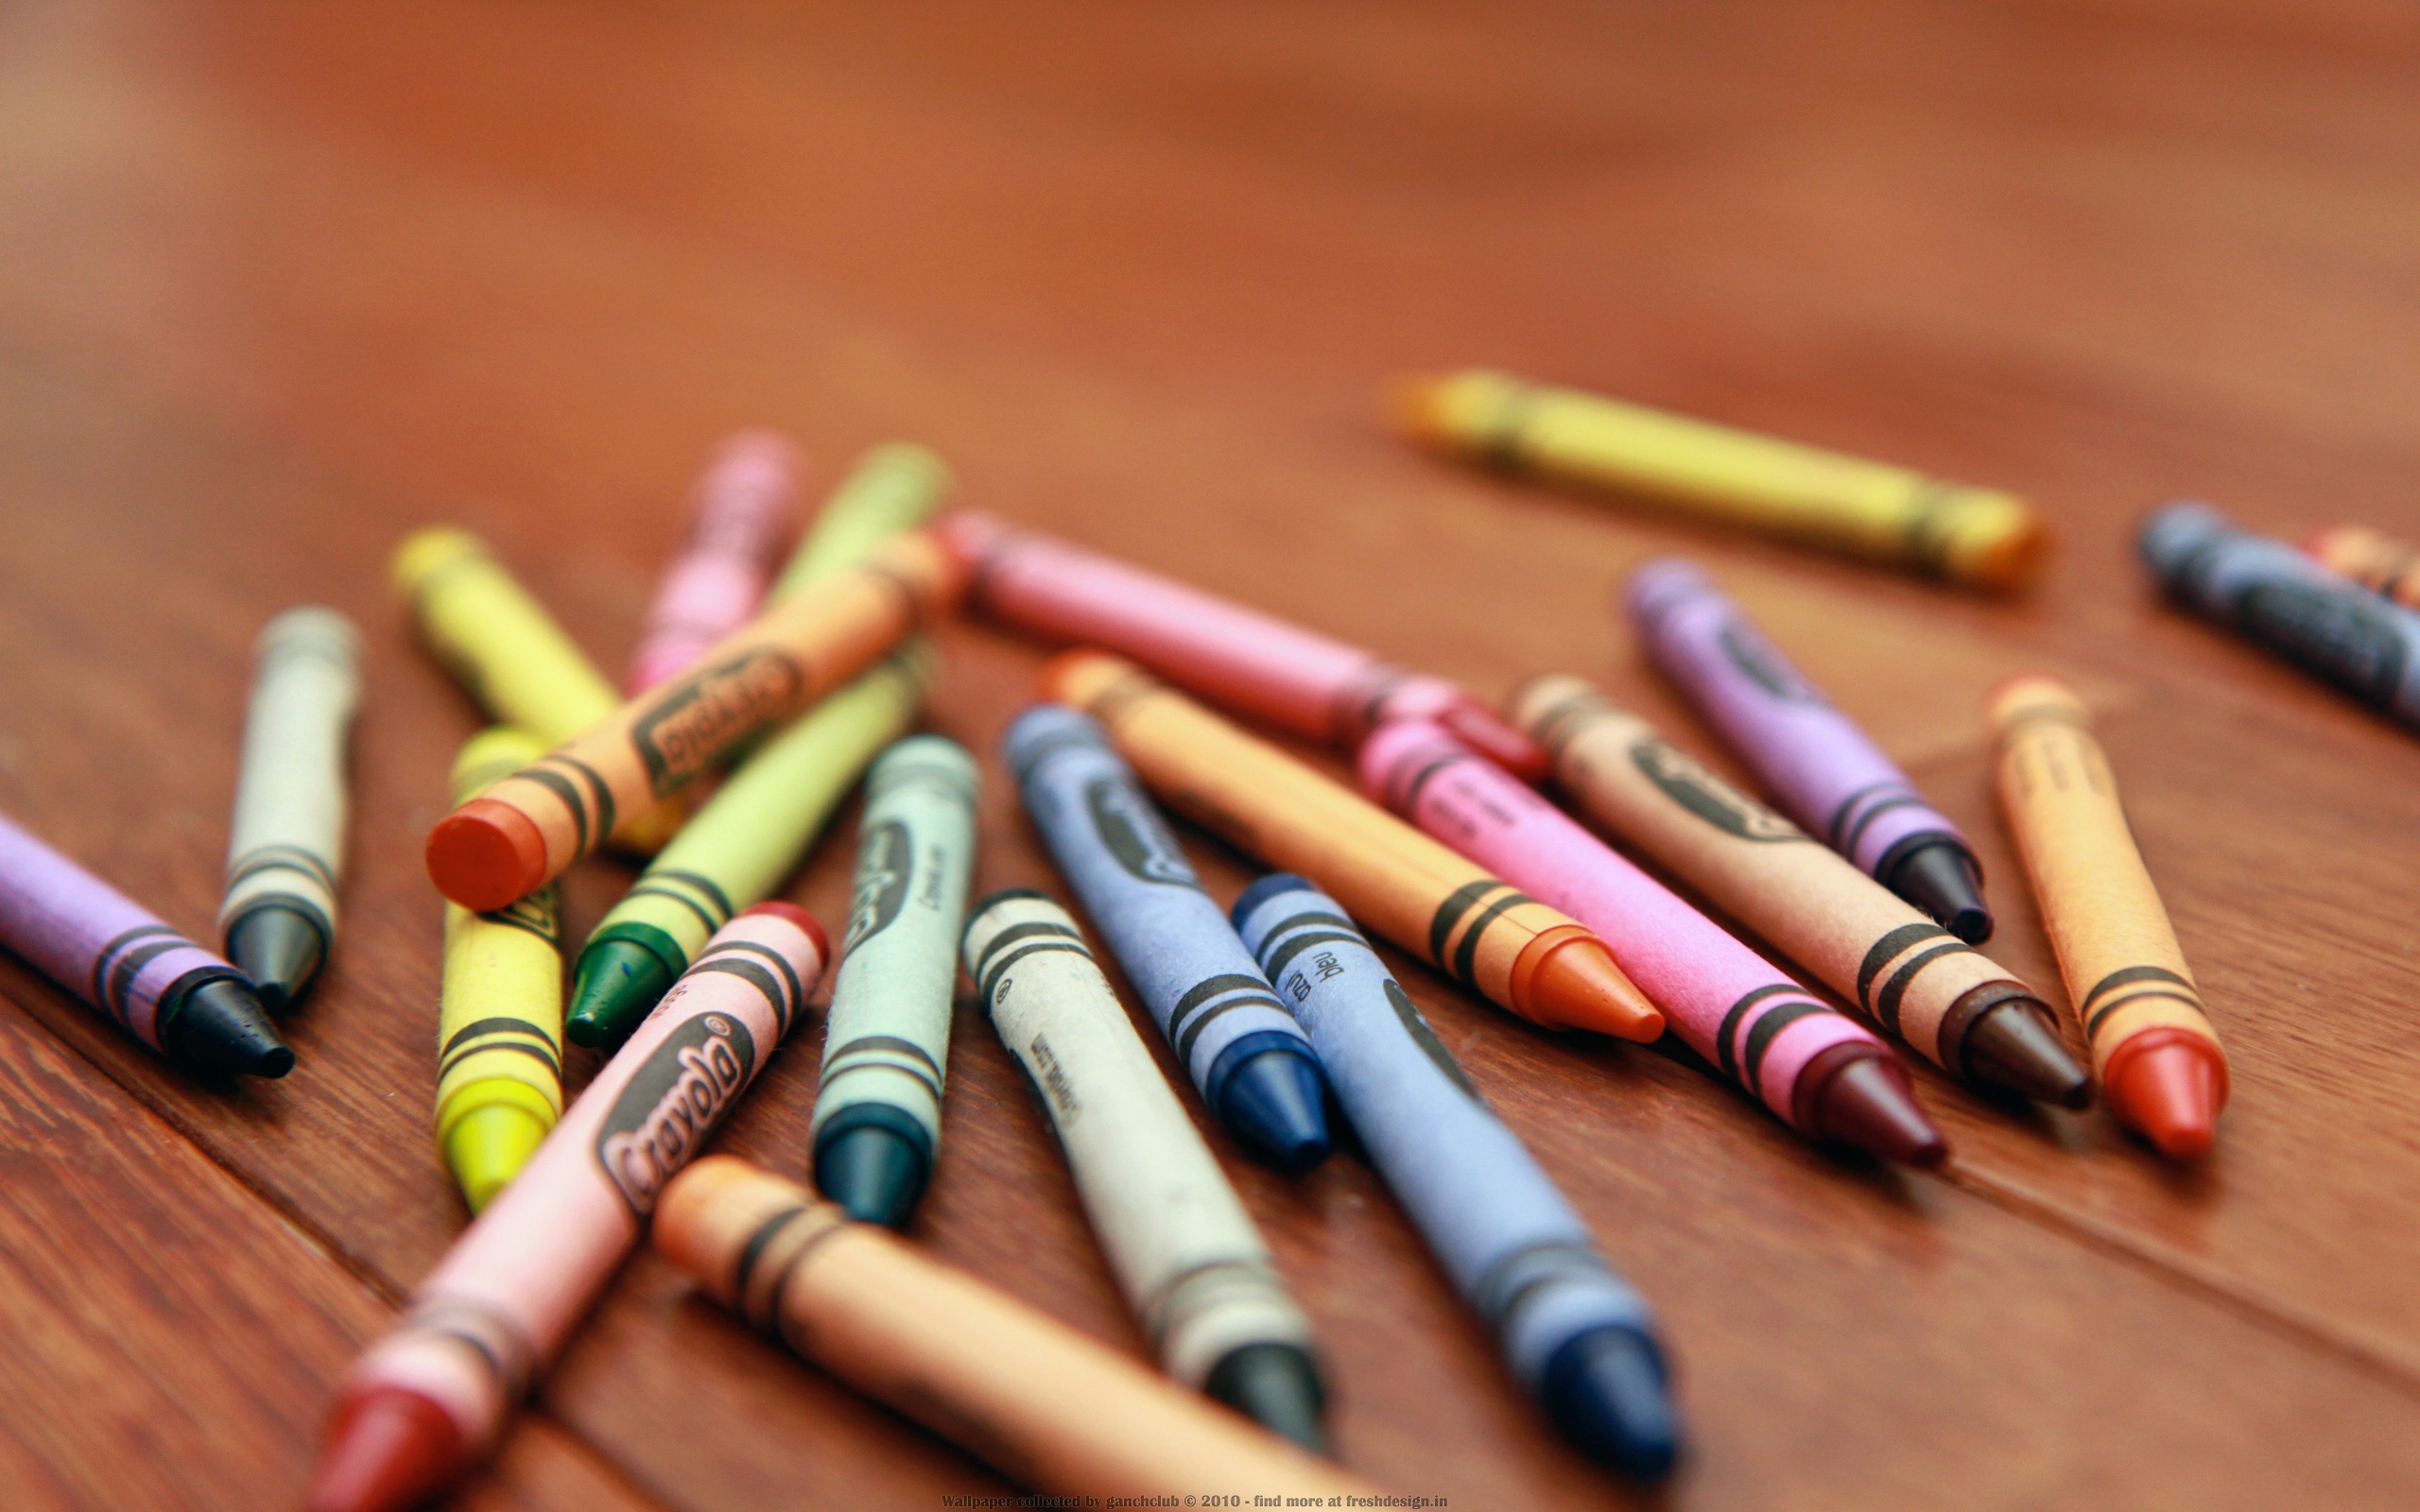 Разбросанные карандаши на столе